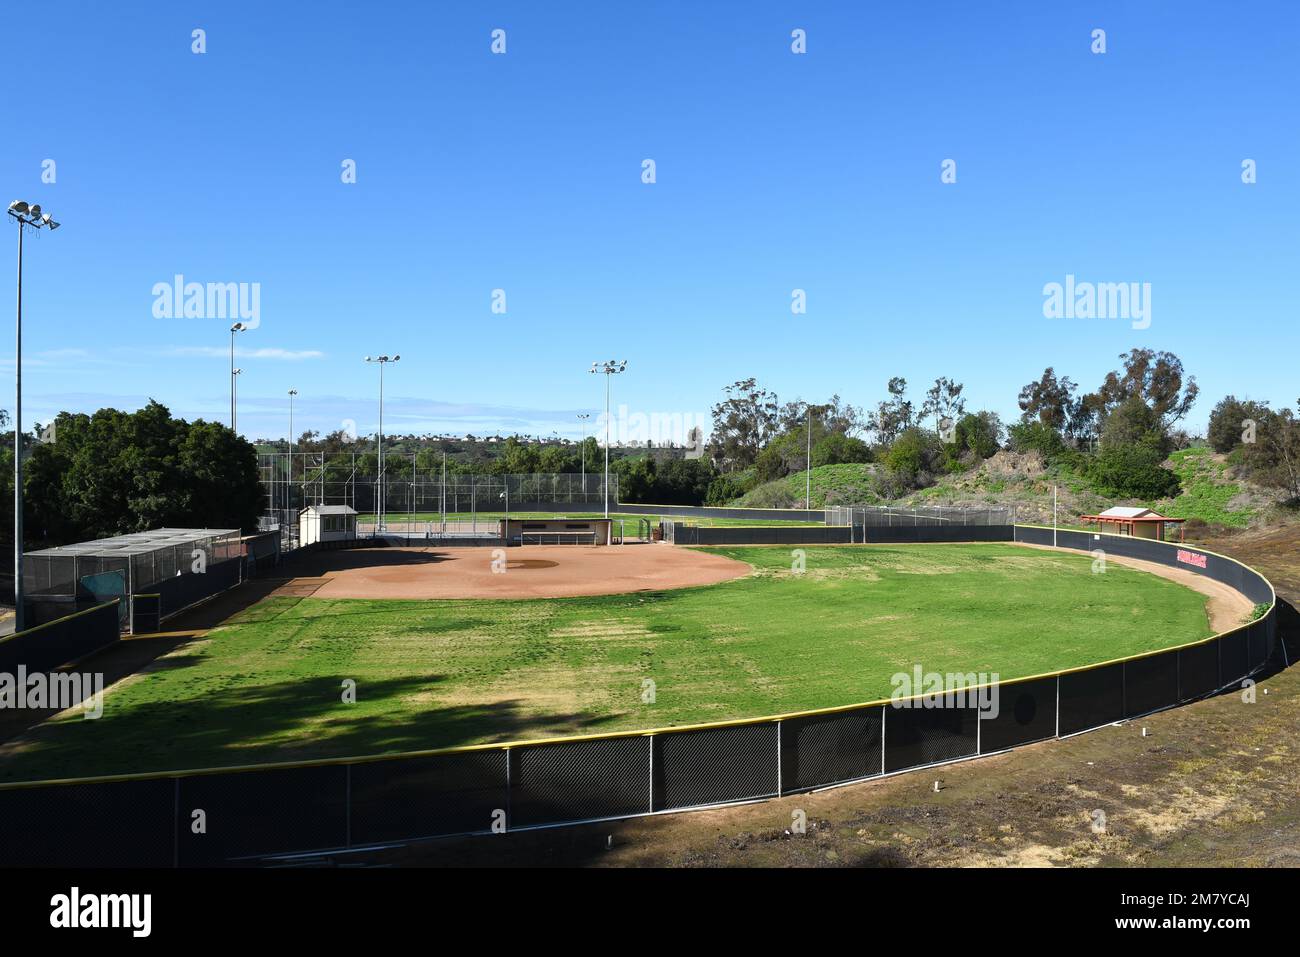 MISSION VIEJO, KALIFORNIEN - 8. JANUAR 2023: Softballfeld auf dem Campus des Saddleback College, Heimstadion der Gauchos. Stockfoto